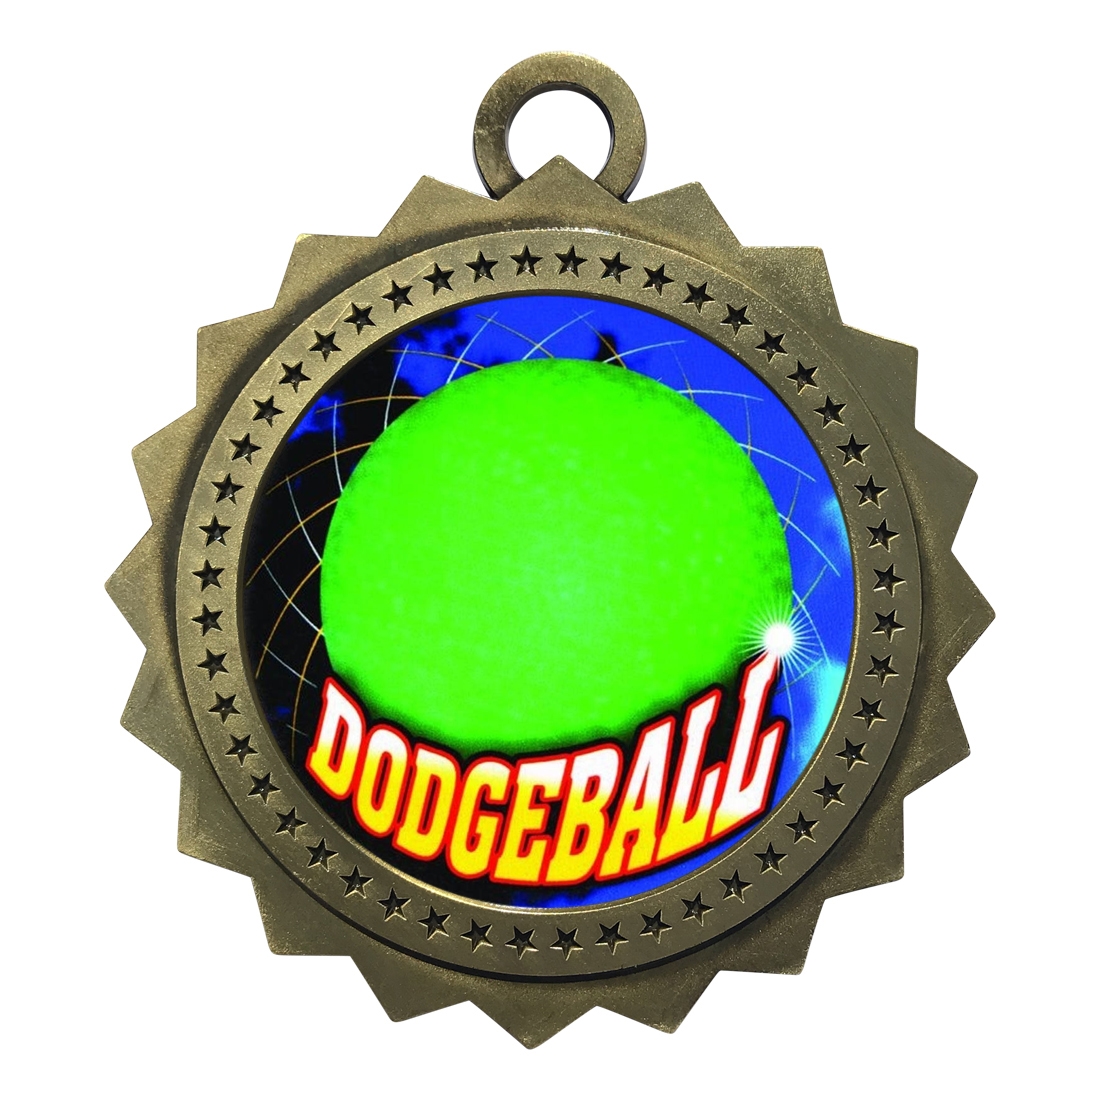 3" Dodgeball Medal